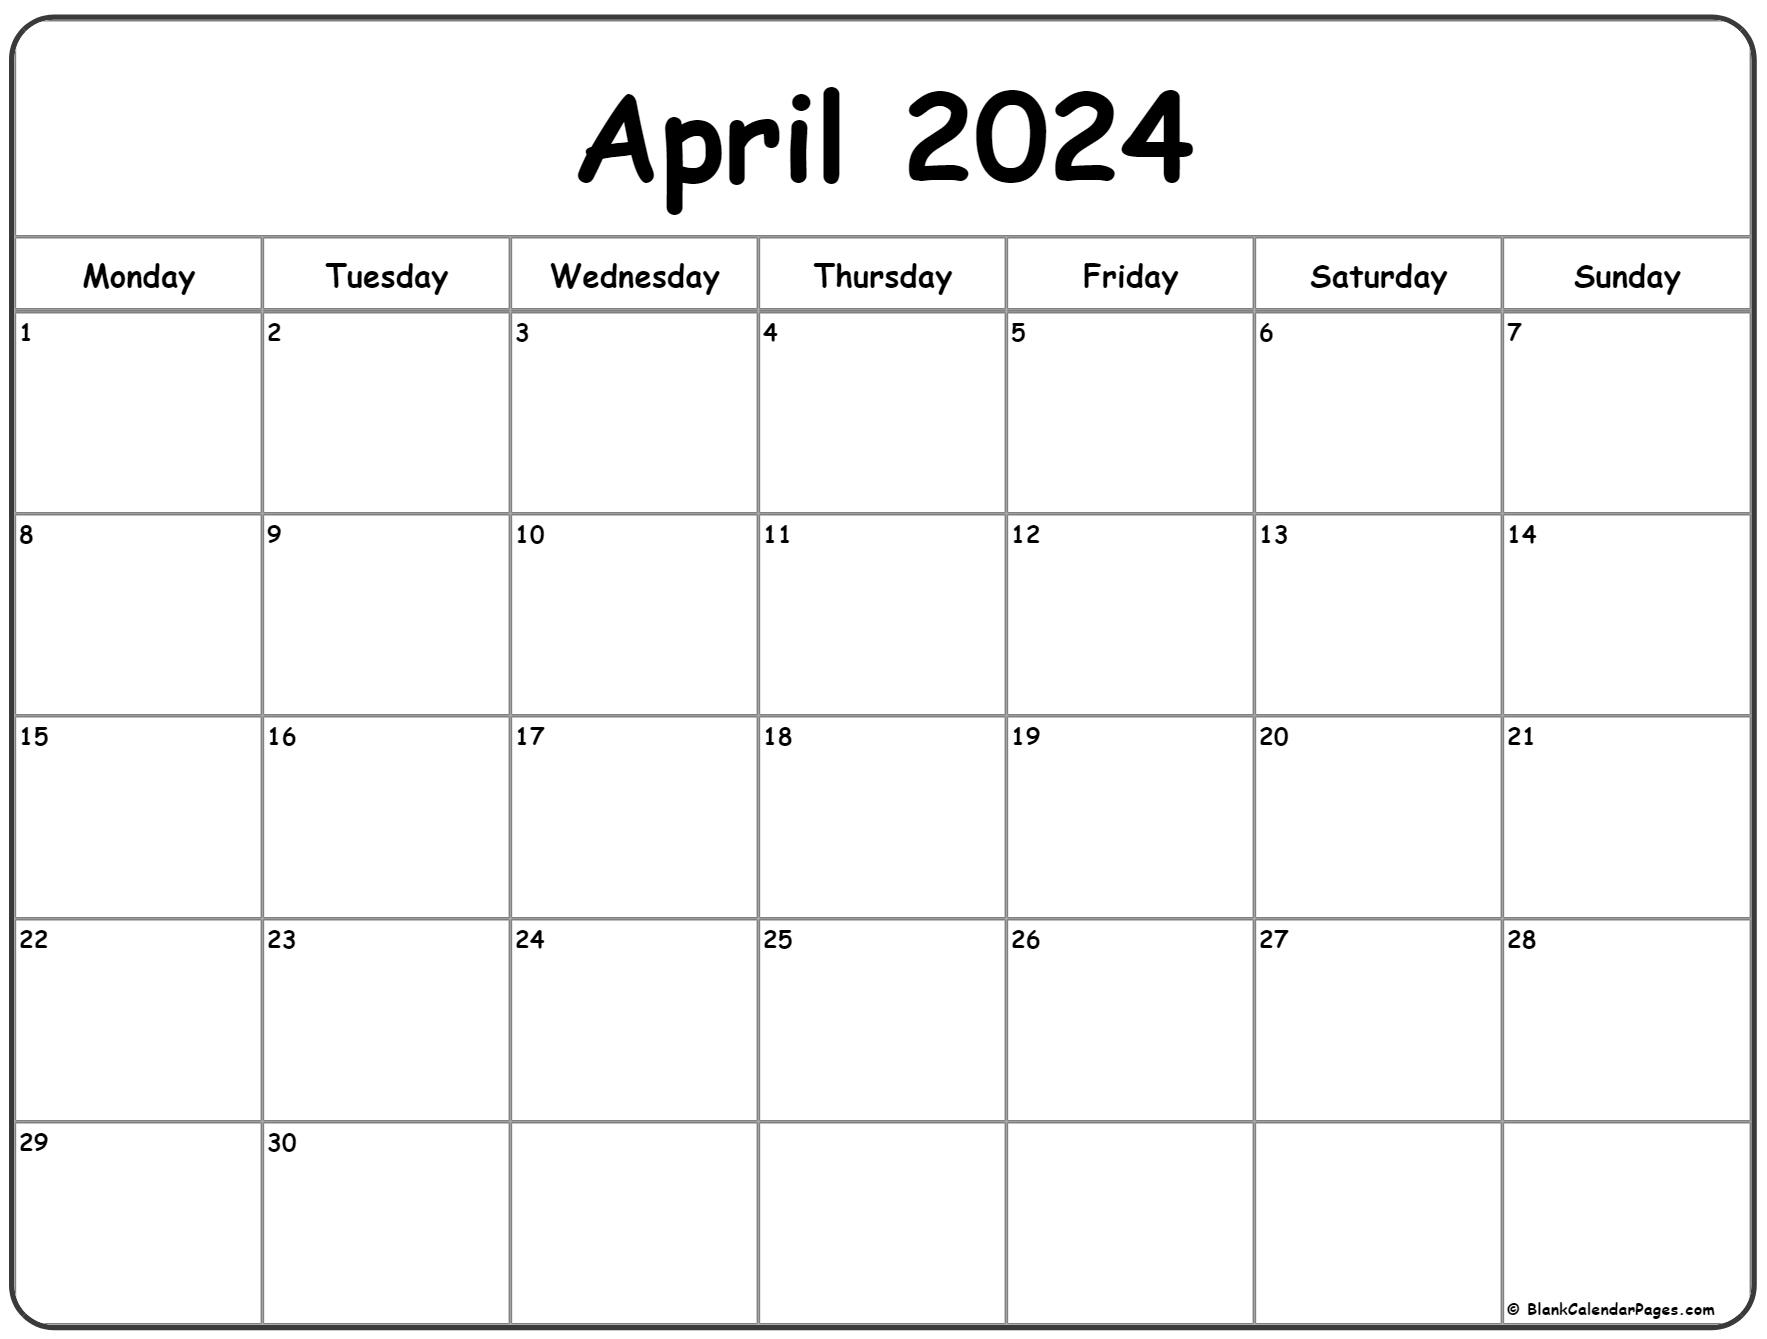 April 2024 Monday Calendar | Monday To Sunday for Printable April Calendar 2024